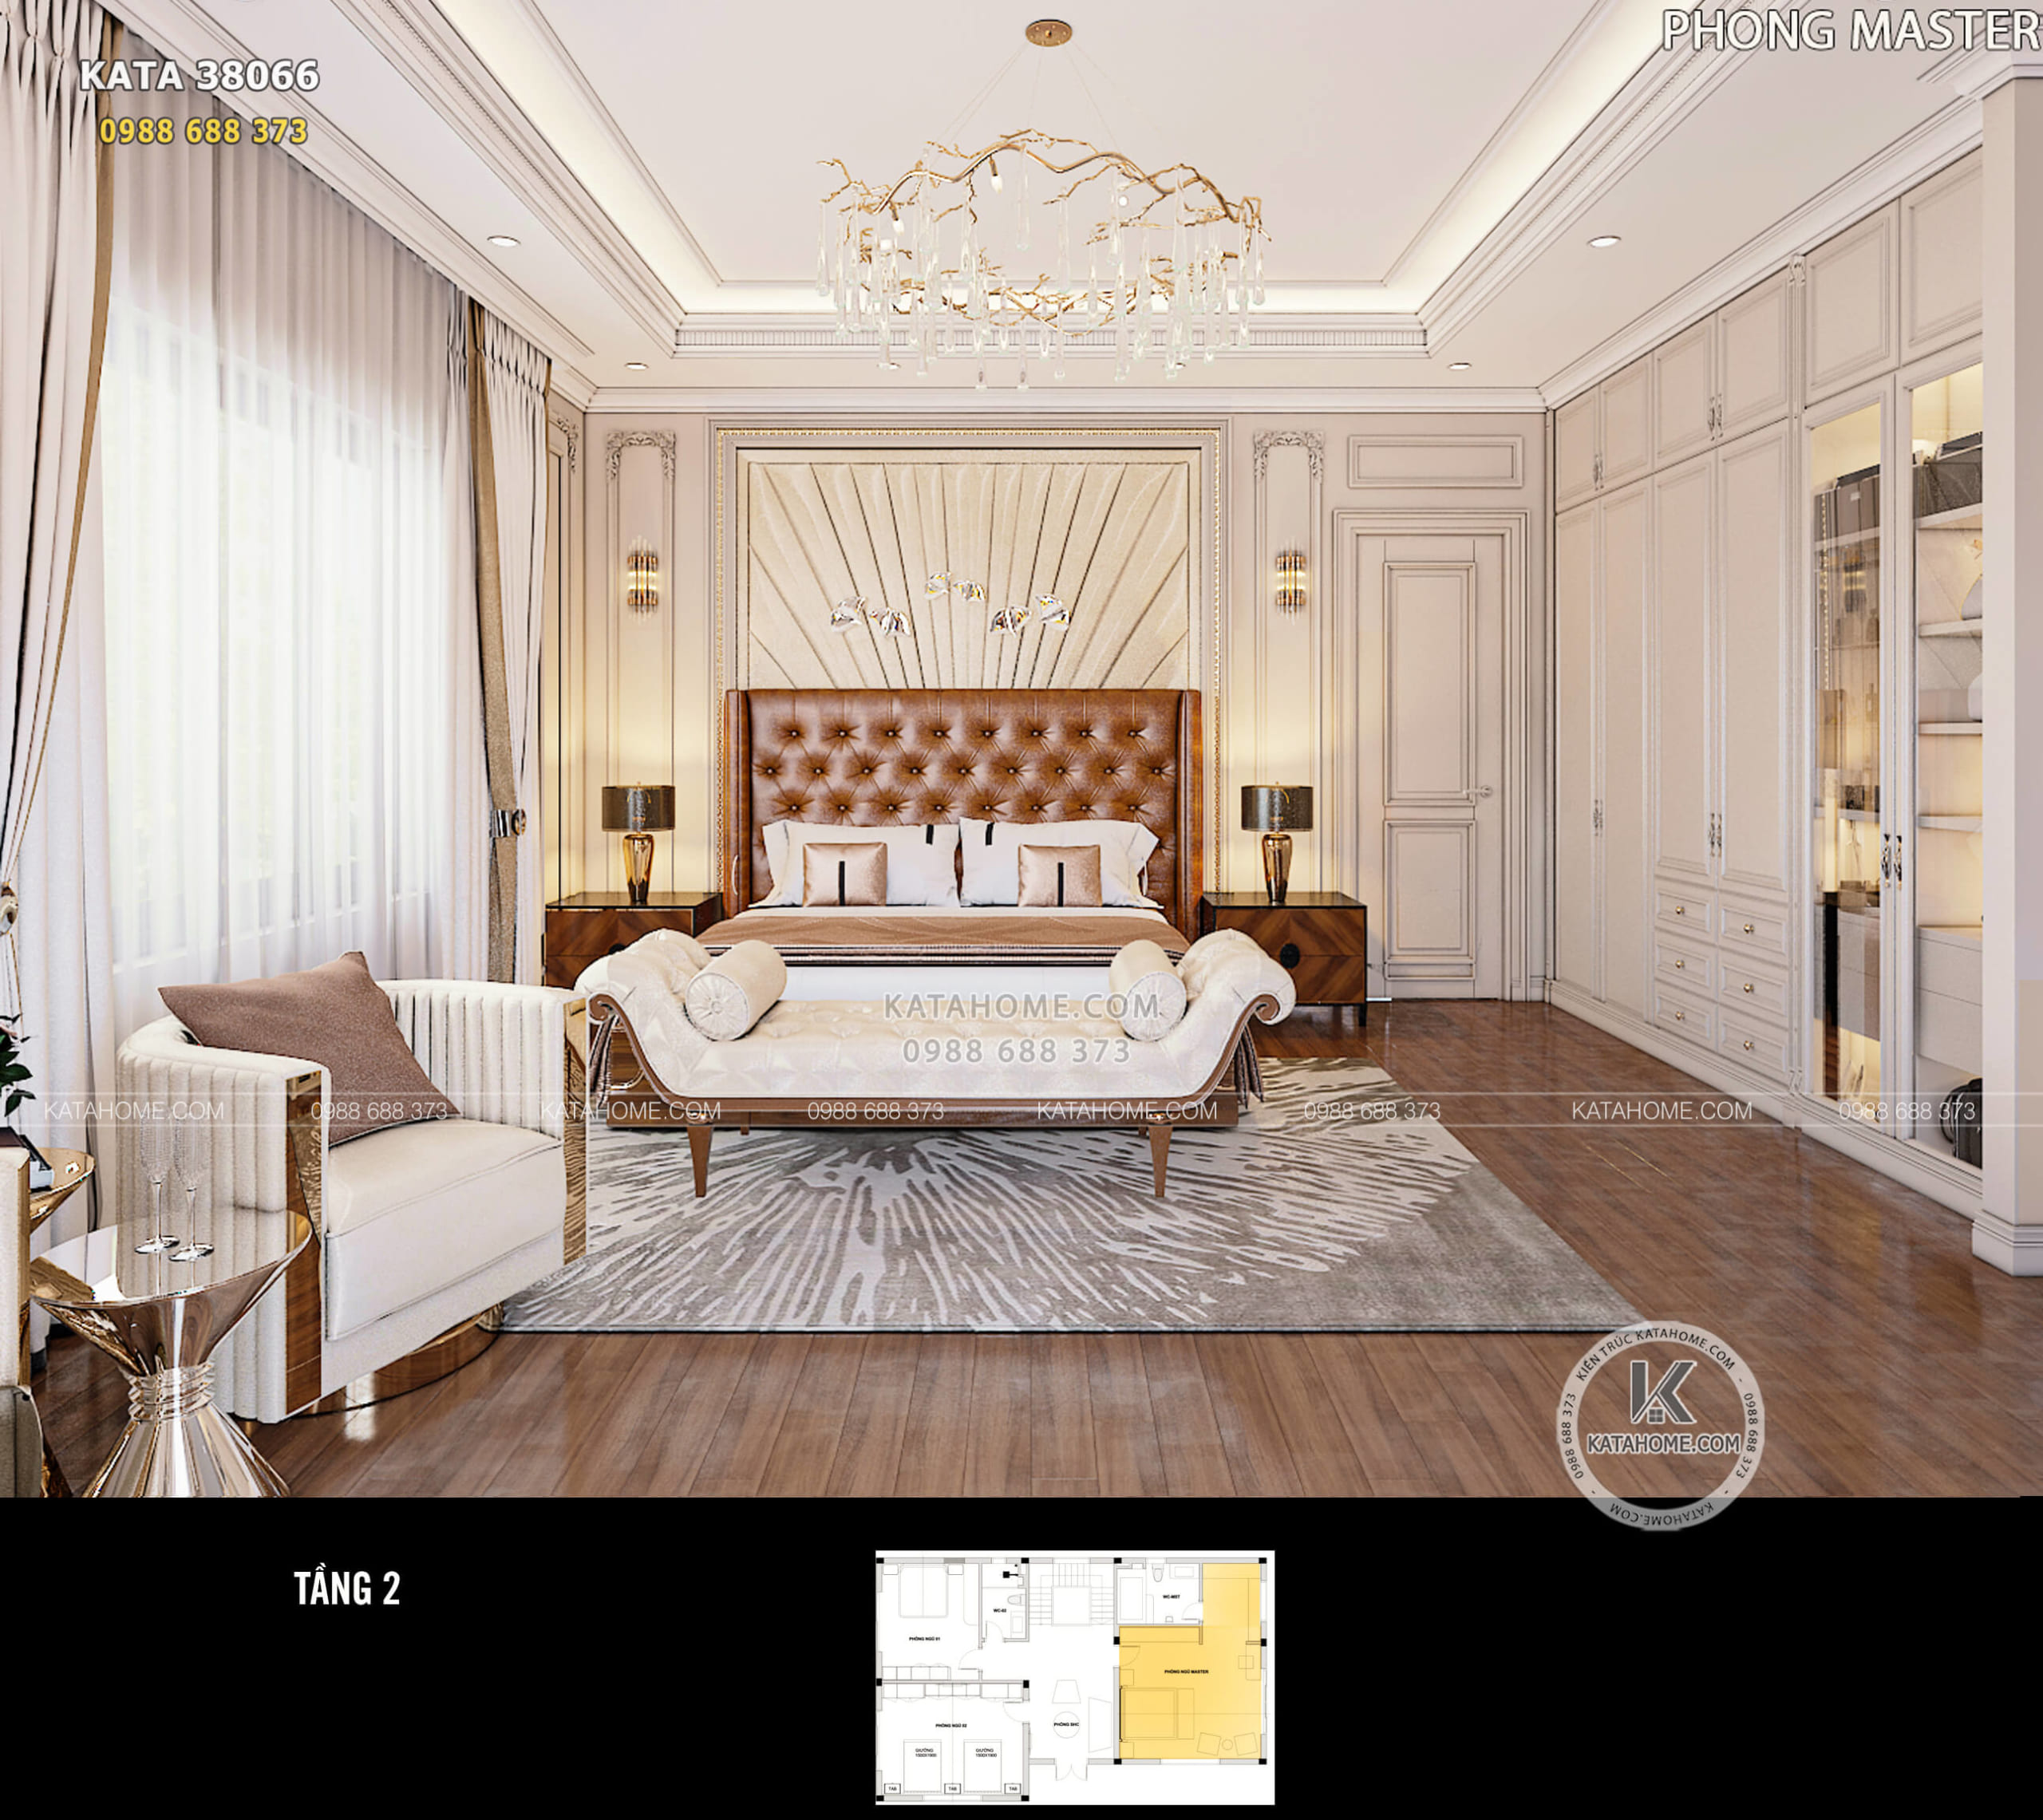 Thiết kế nội thất phòng ngủ master theo phong cách kiến trúc tân cổ điển